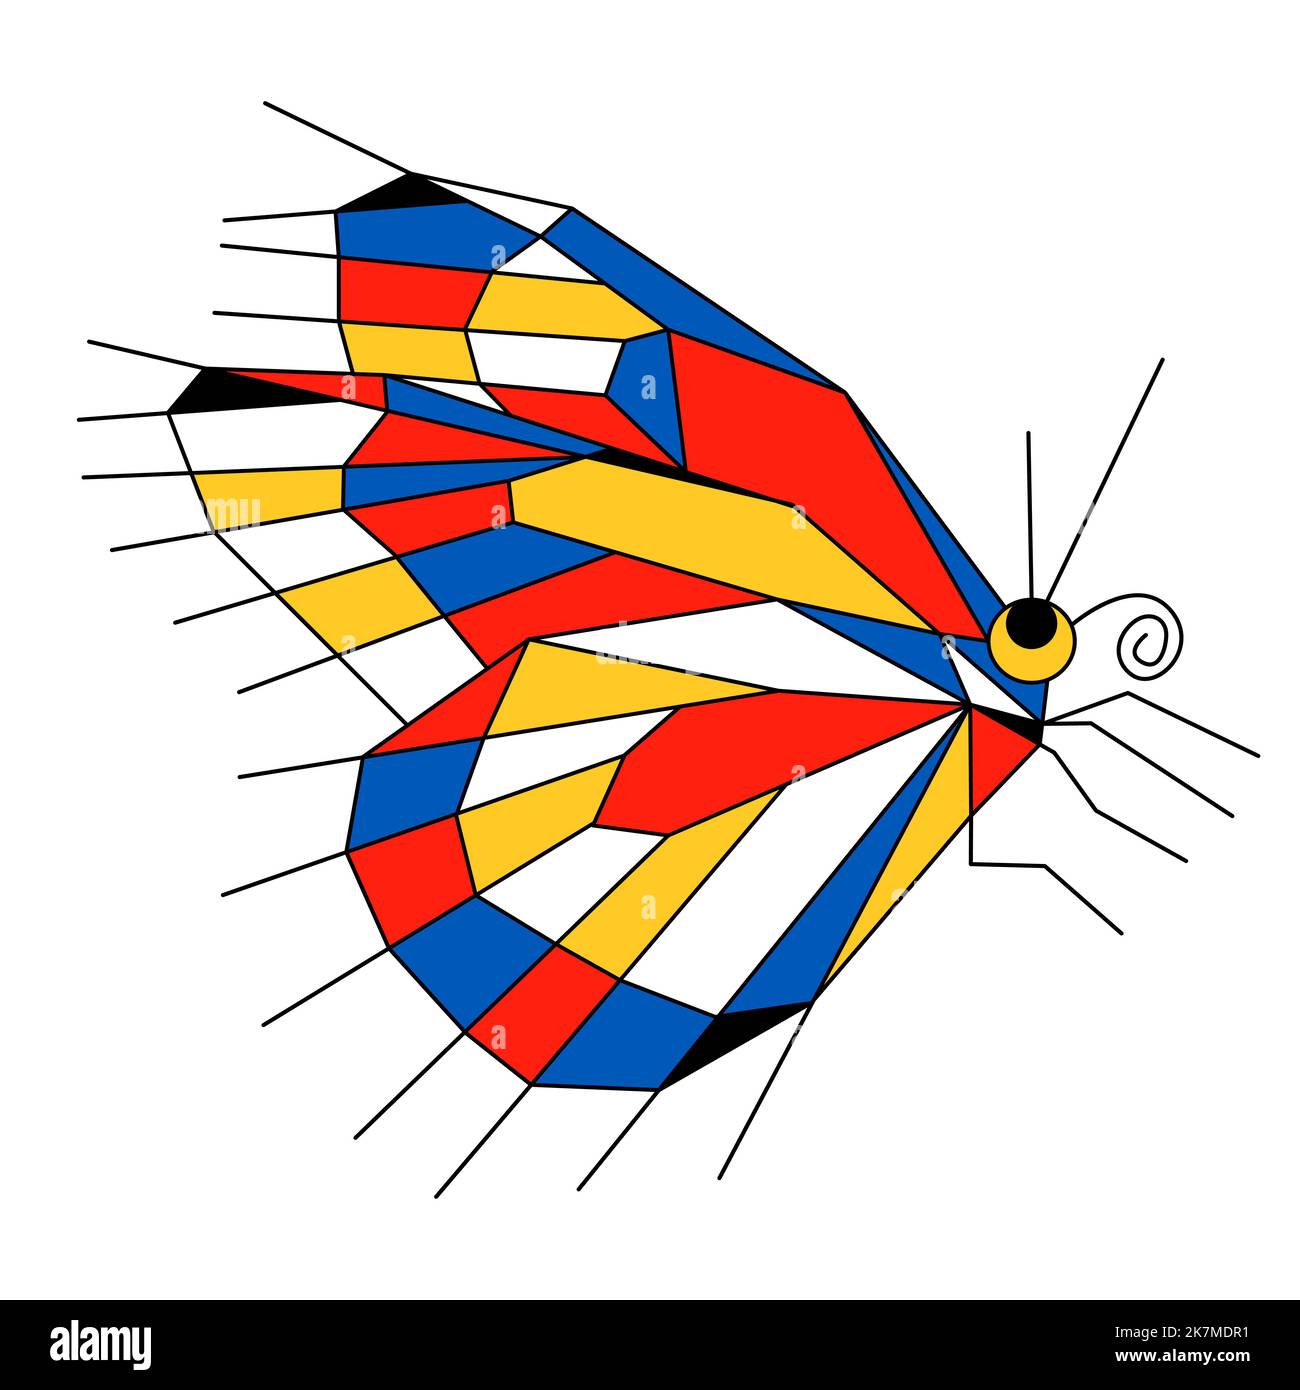 Abstrakte bunte Schmetterling Neoplastik, Bauhaus, Mondrian-Stil. Rot gelb blau Farben einfache Formen Insekt. Heim Interieur, Druck, Deckel, Logo, Emblem Vektor Illustration Element Stock Vektor